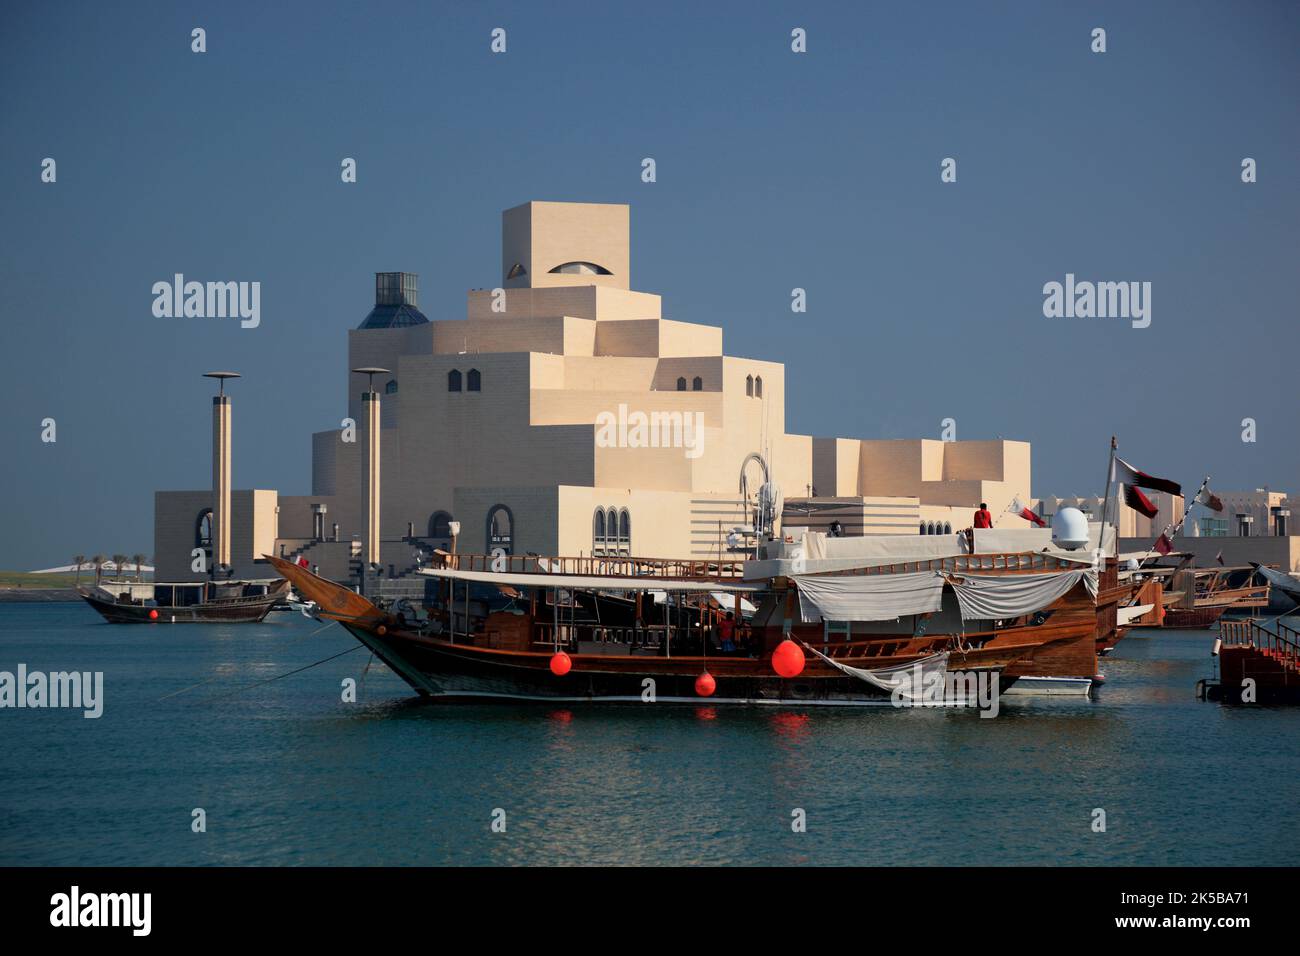 Museum für islamische Kunst, Doha, doré als bedeutstes Museum für islamische Kunst à Arabien, Wahrzeichen der Stadt Doha, Qatar, Katar Banque D'Images